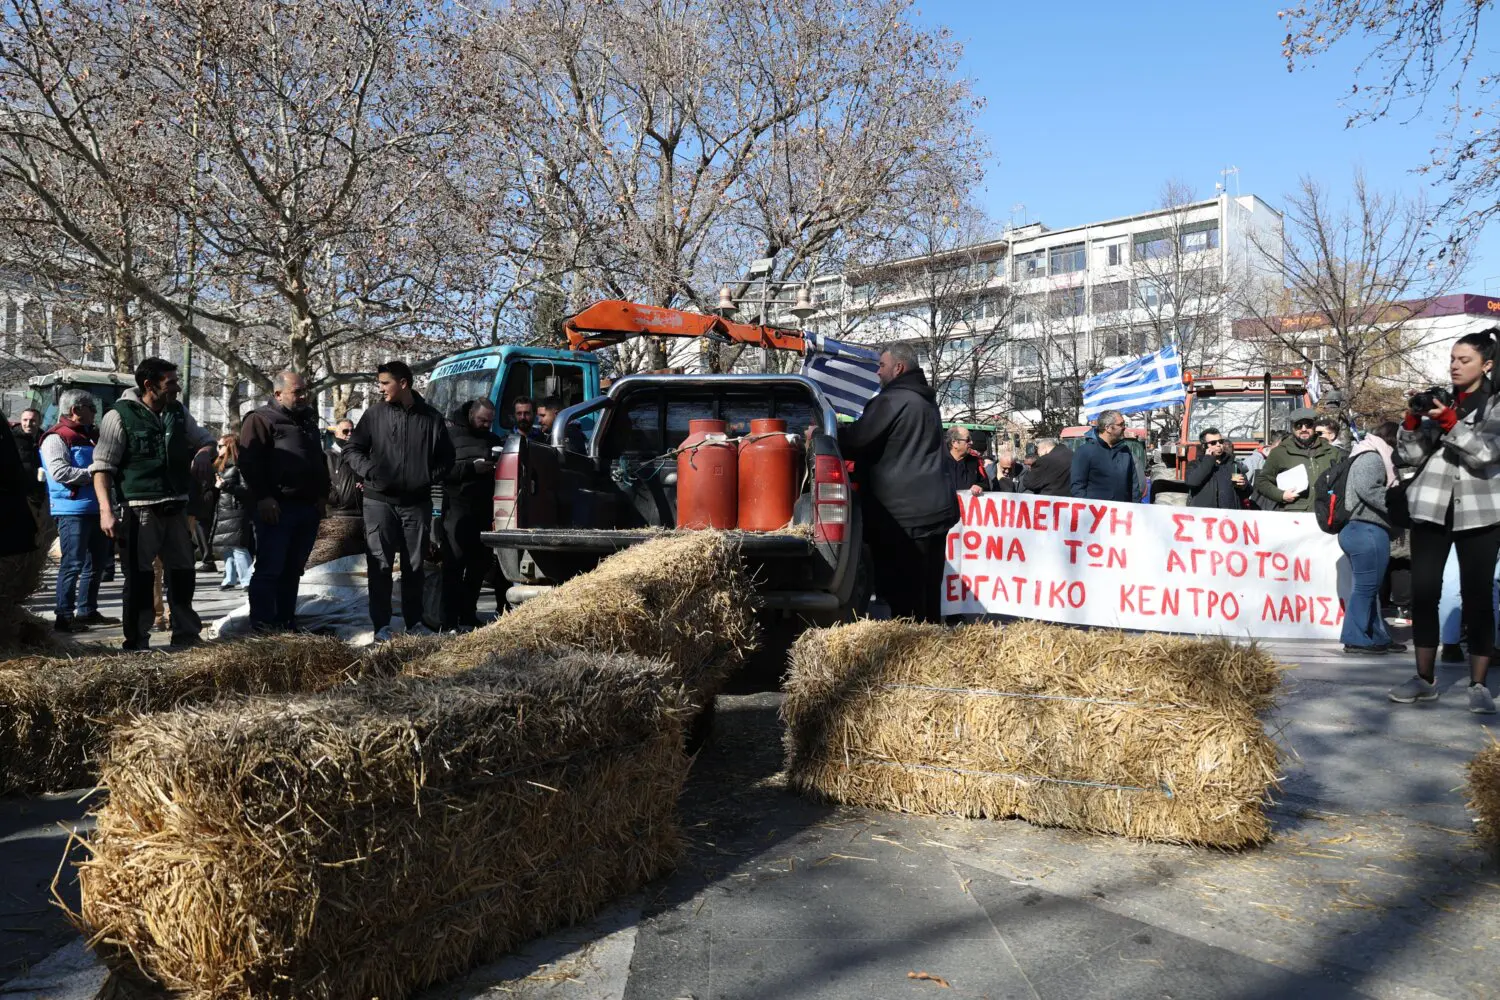 Κλιμακώνονται οι κινητοποιήσεις αγροτών και κτηνοτρόφων – Έριξαν γάλα σε κεντρική πλατεία της Λάρισας (φώτο)